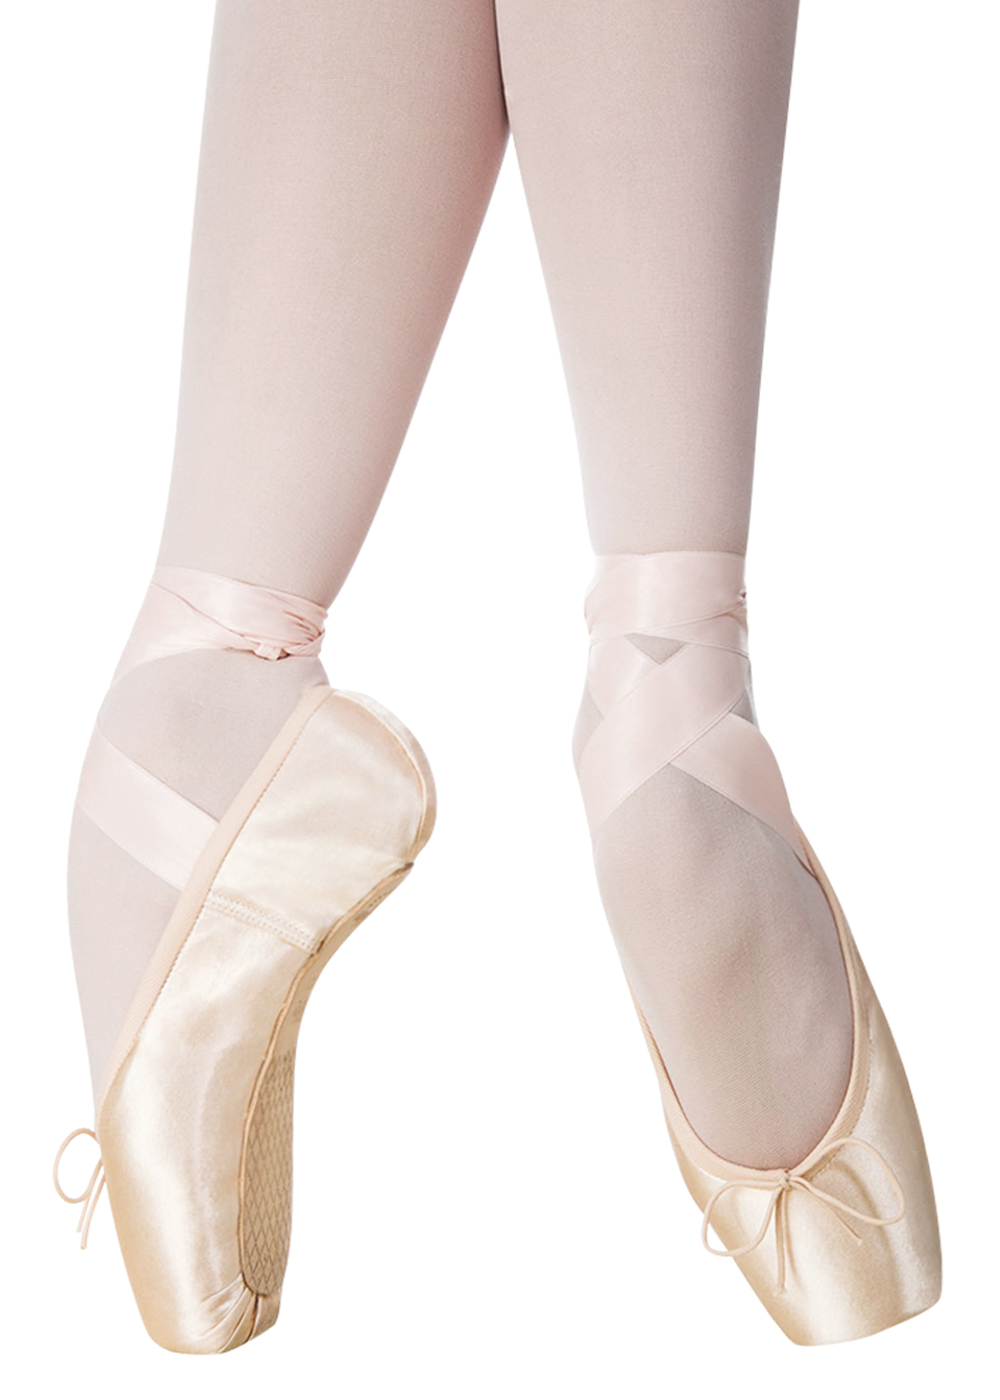 Chicle insalubre tienda Puntas de Ballet Triumph Grishko - Calzado Ballet para Comprar Online